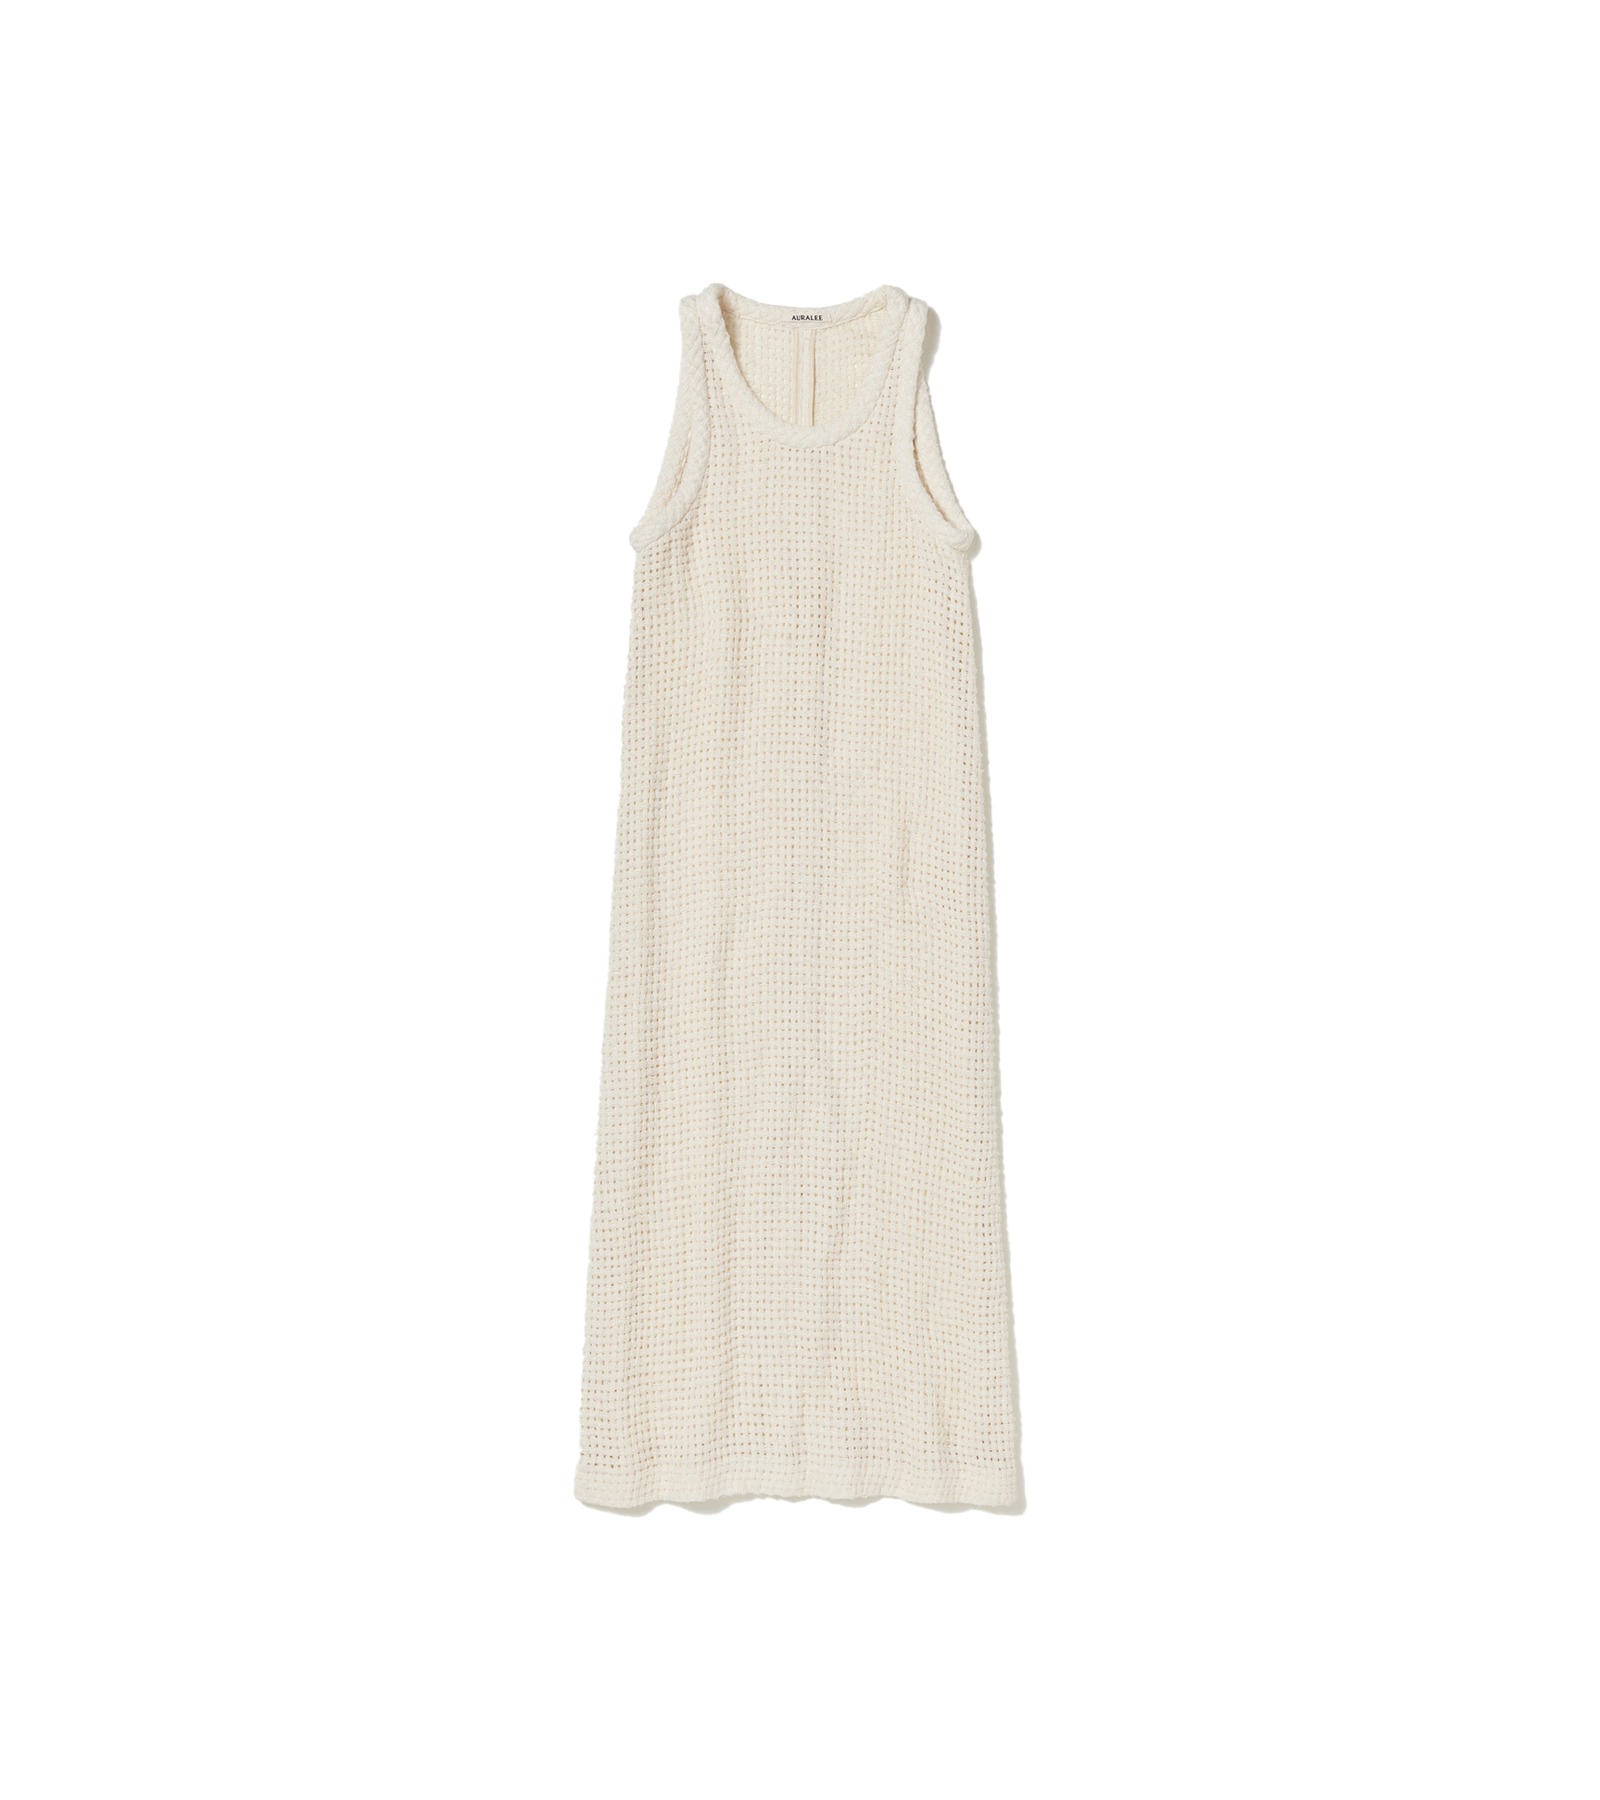 Homespun Summer Tweed Mesh Dress (Off White)